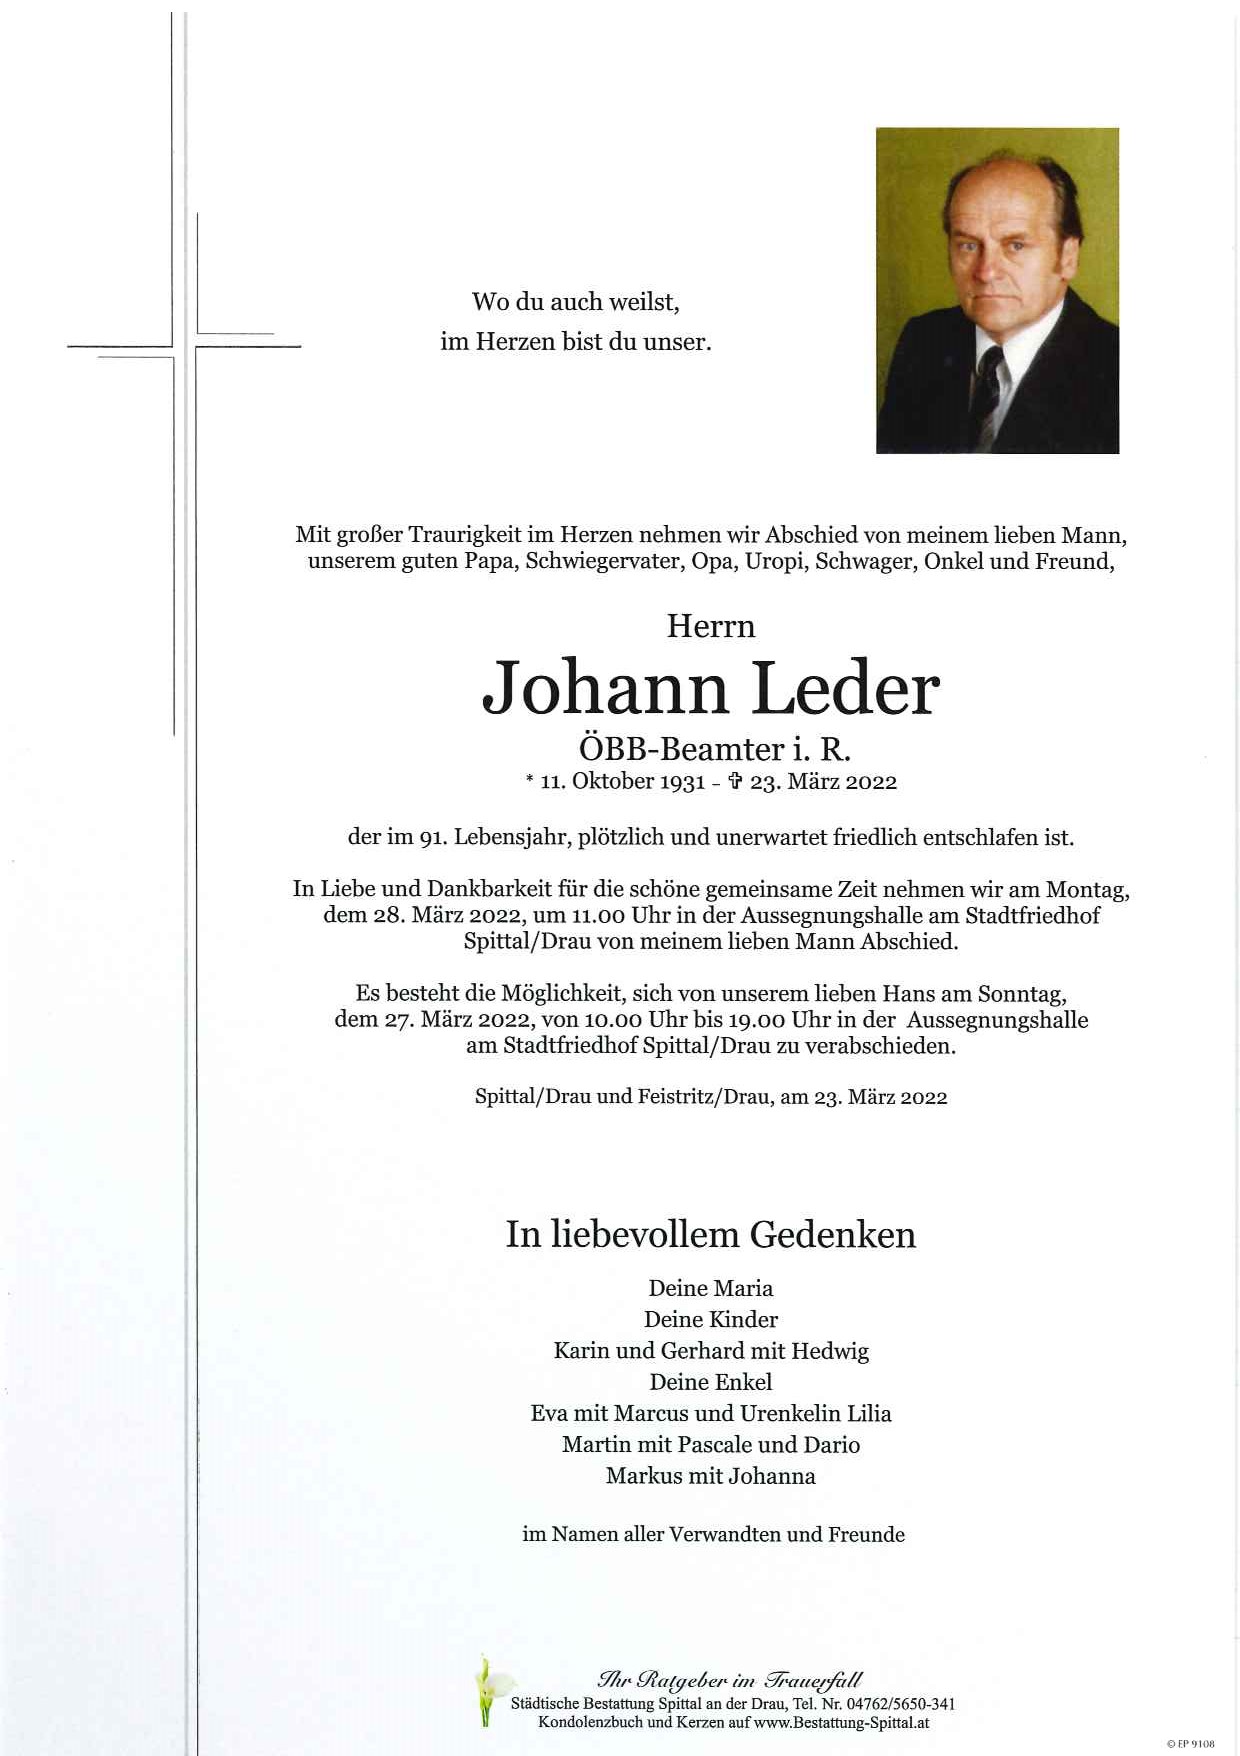 Johann Leder